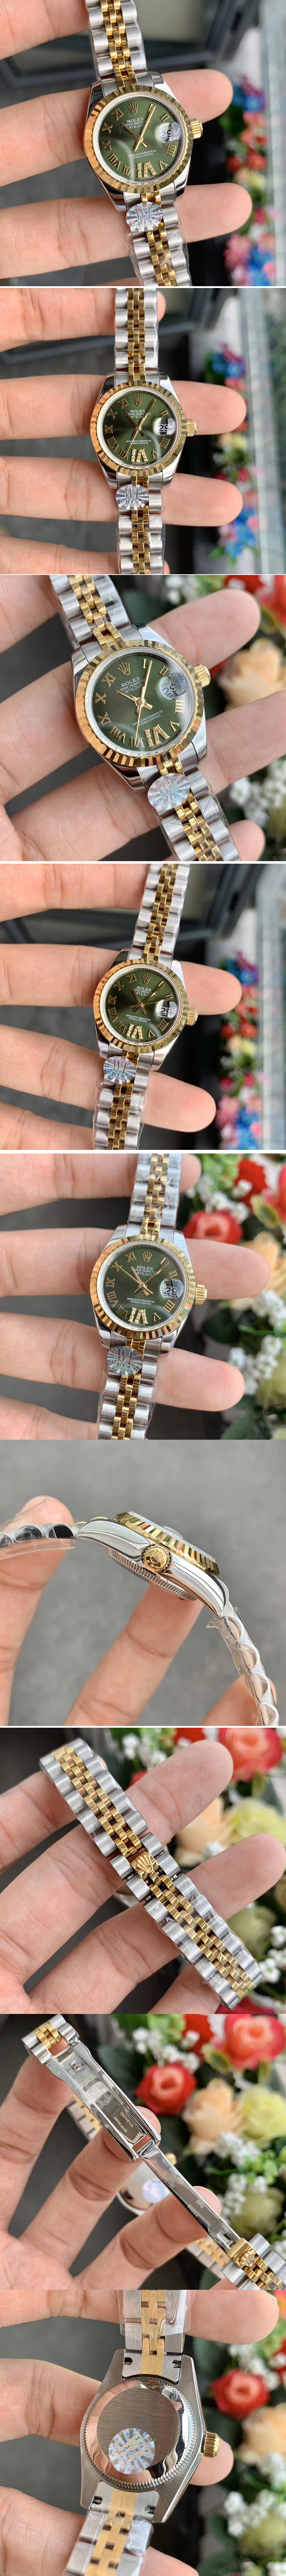 Replica Rolex  Watches